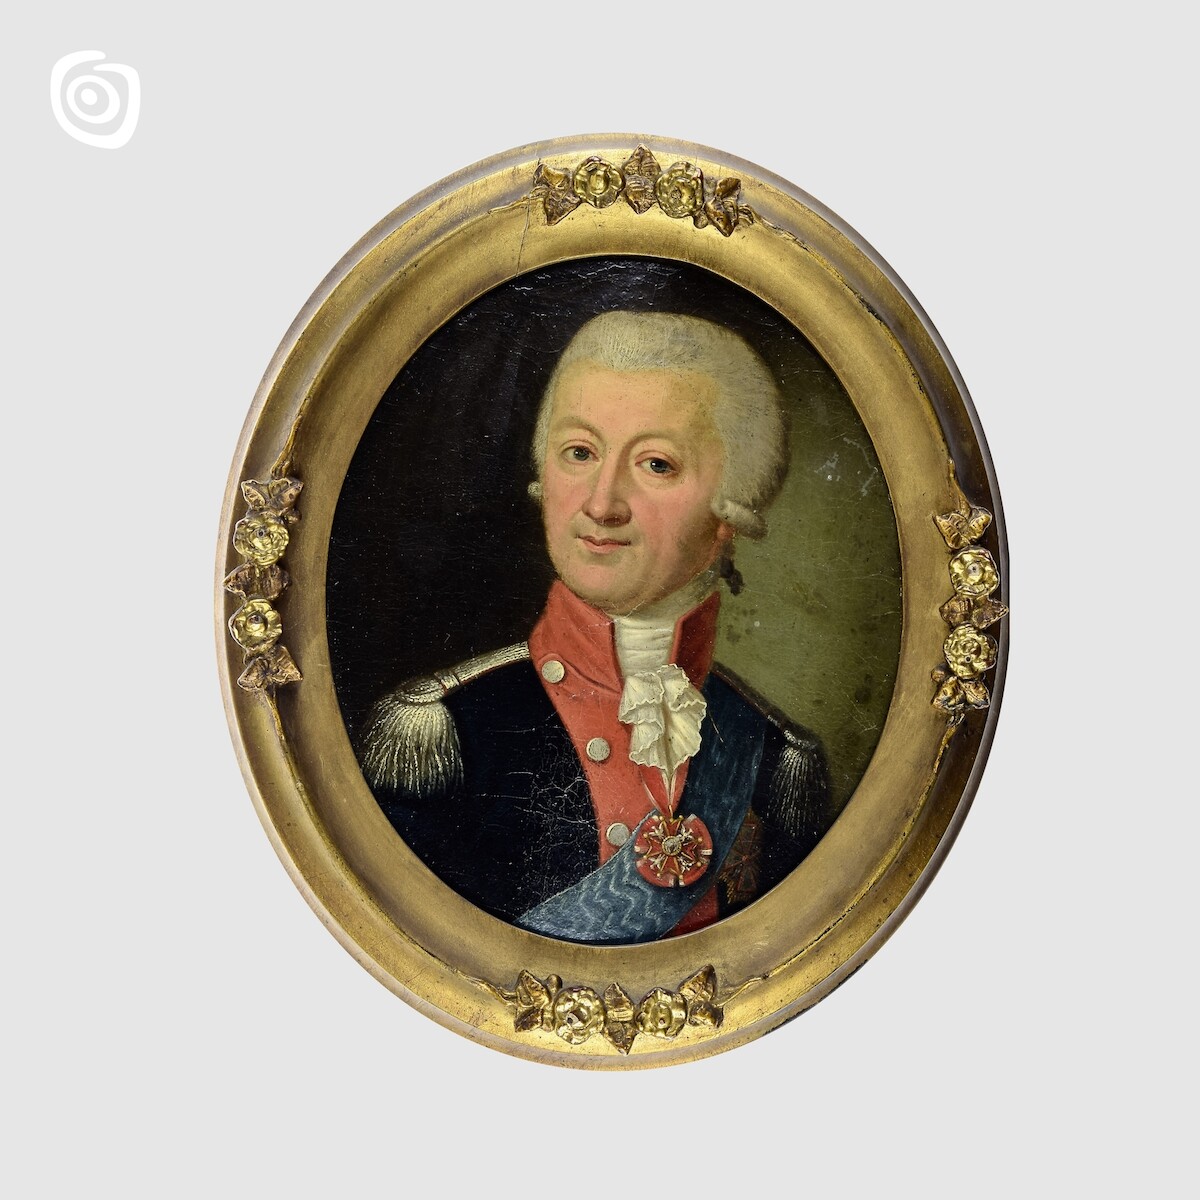 Portret Franciszka Salezego Miaskowskiego h. Bończa, Gniezno, 1790 r.